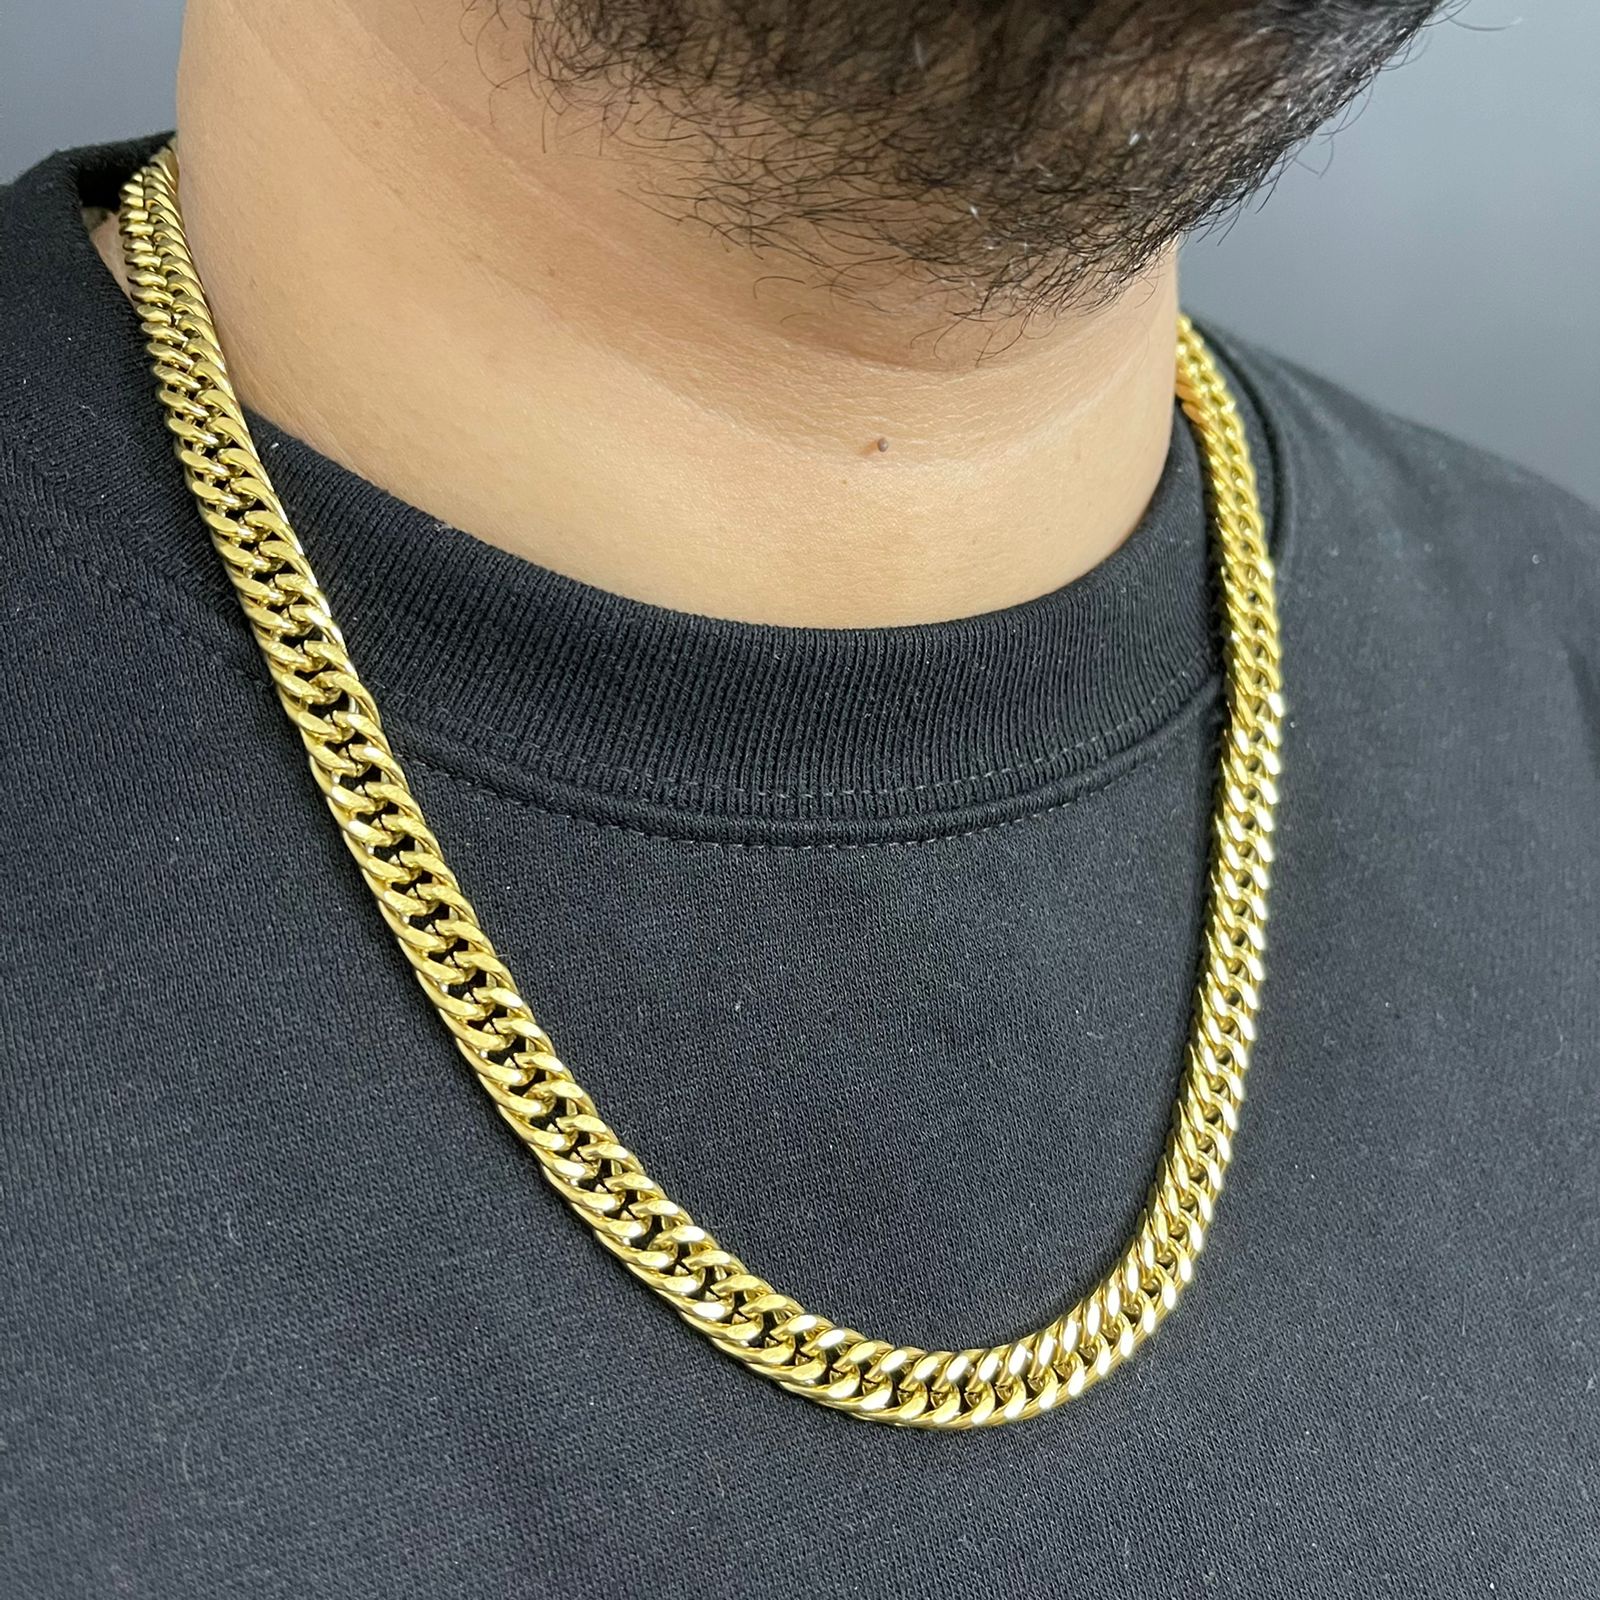 10mm Golden Big heavy neck chain for men boys in Pakistan